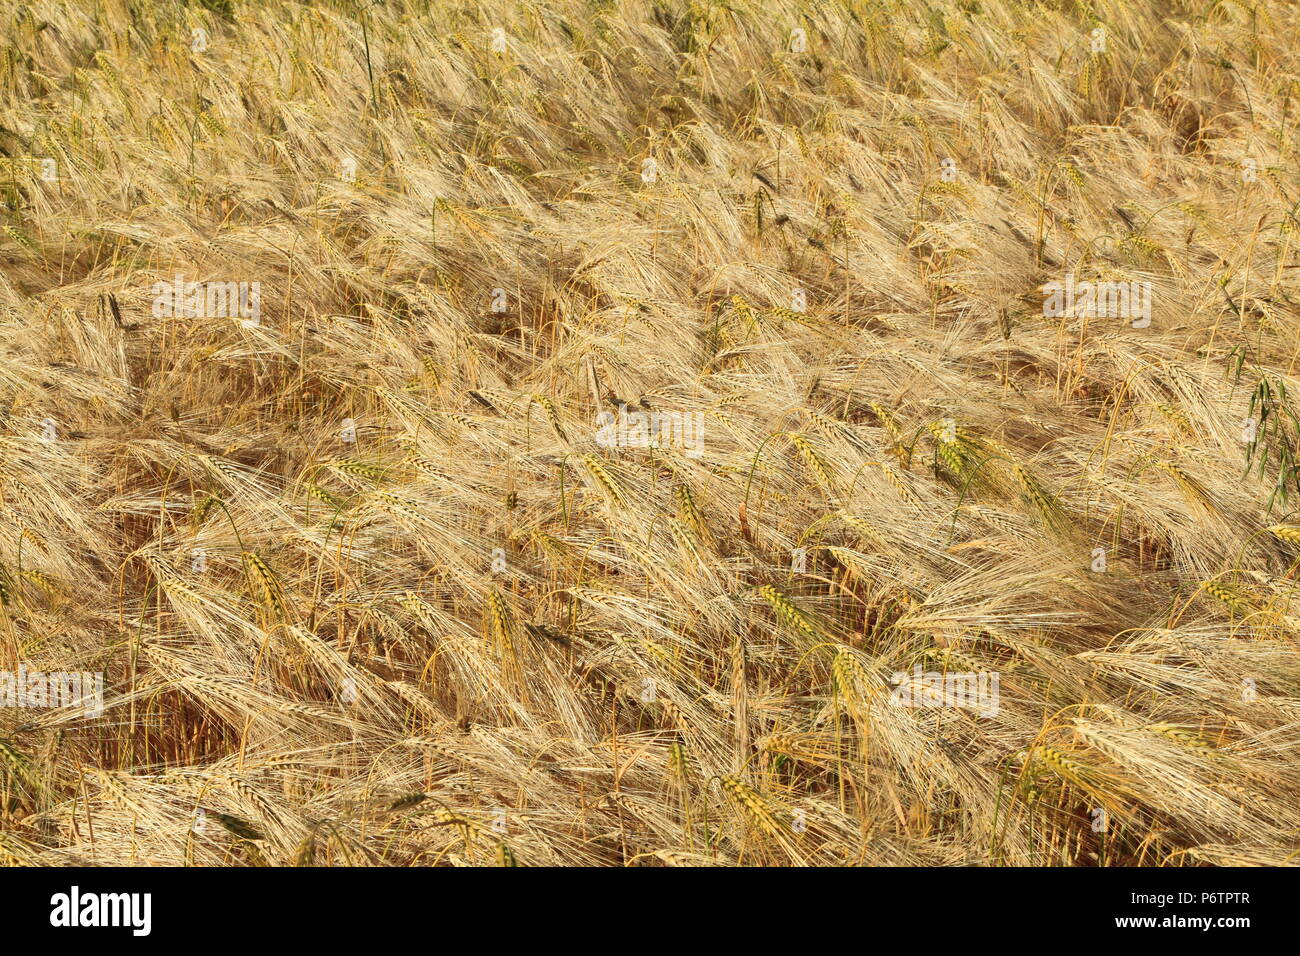 Cebada, agrícola, campo, cultivo, detalle Foto de stock